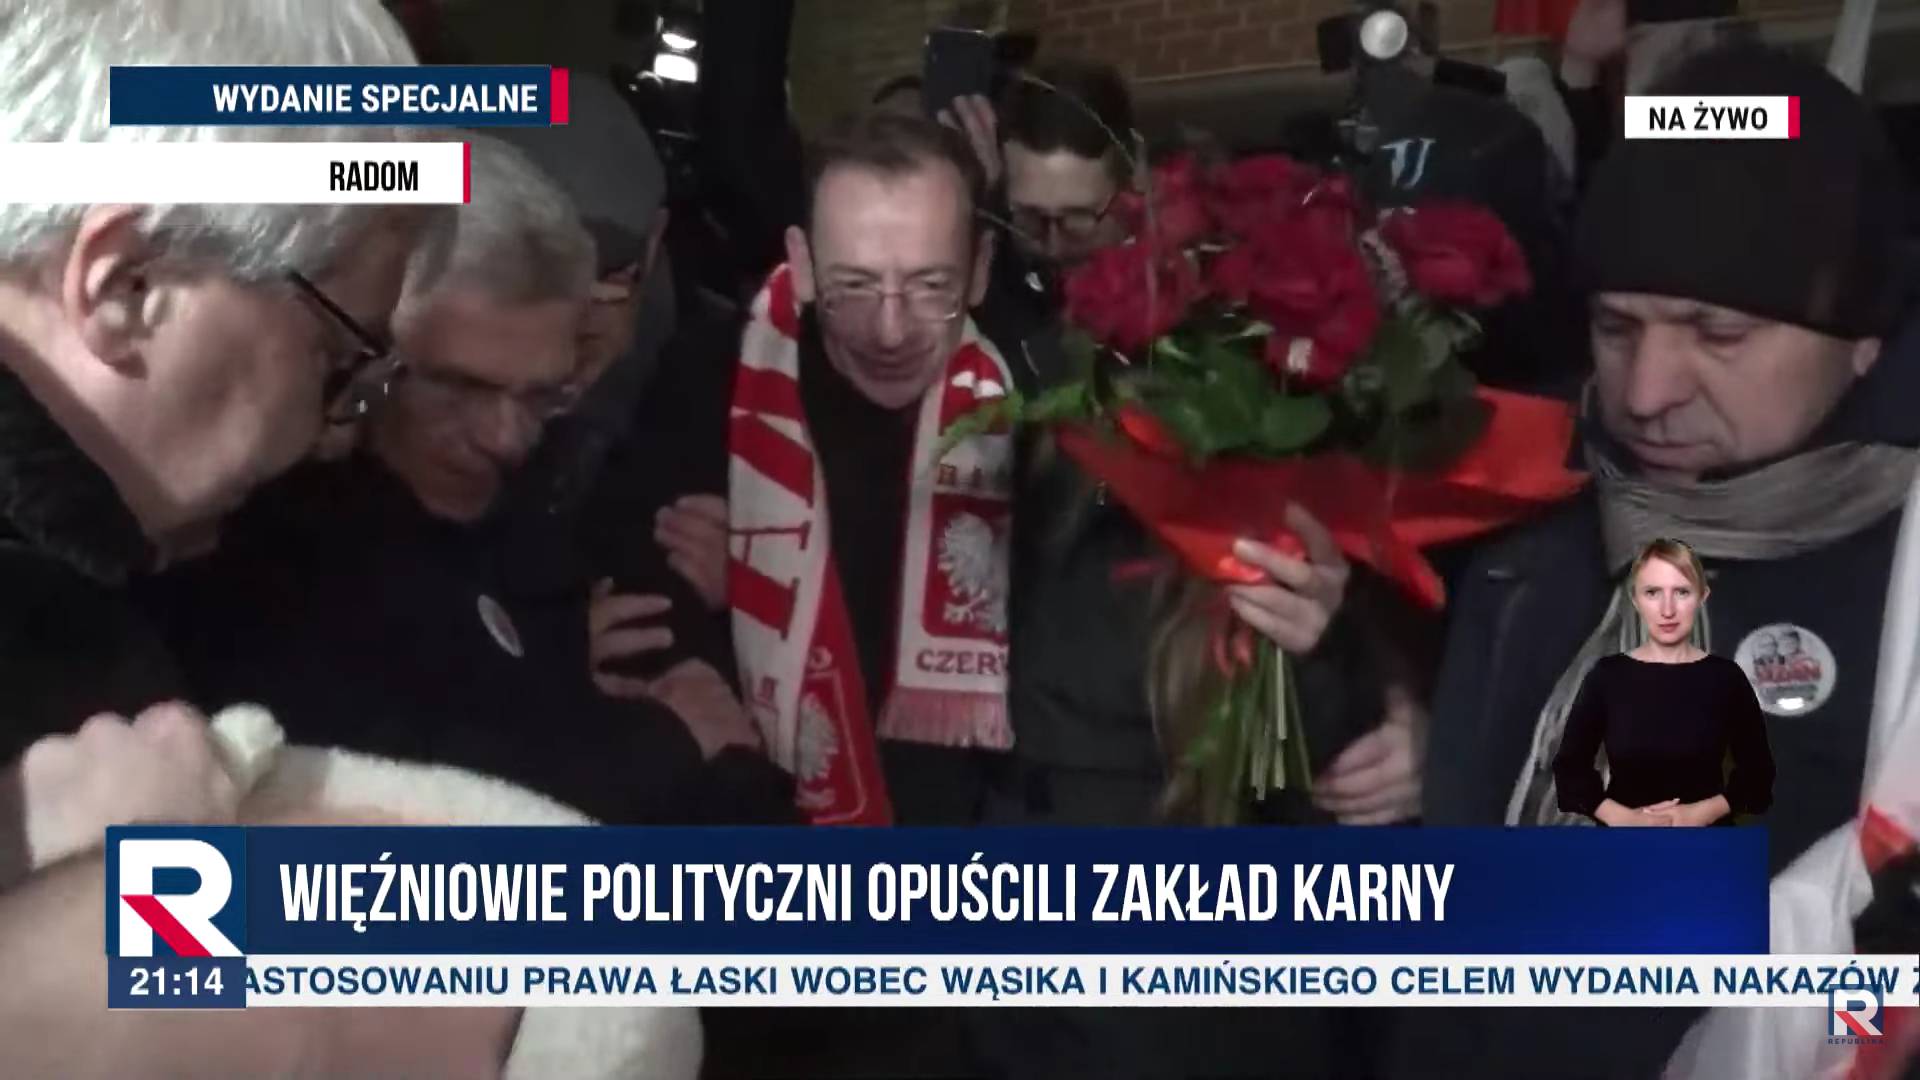 Kaminski w szaliku z napisem Polska z kwiatami wychodzi z więzienia w Radomiu